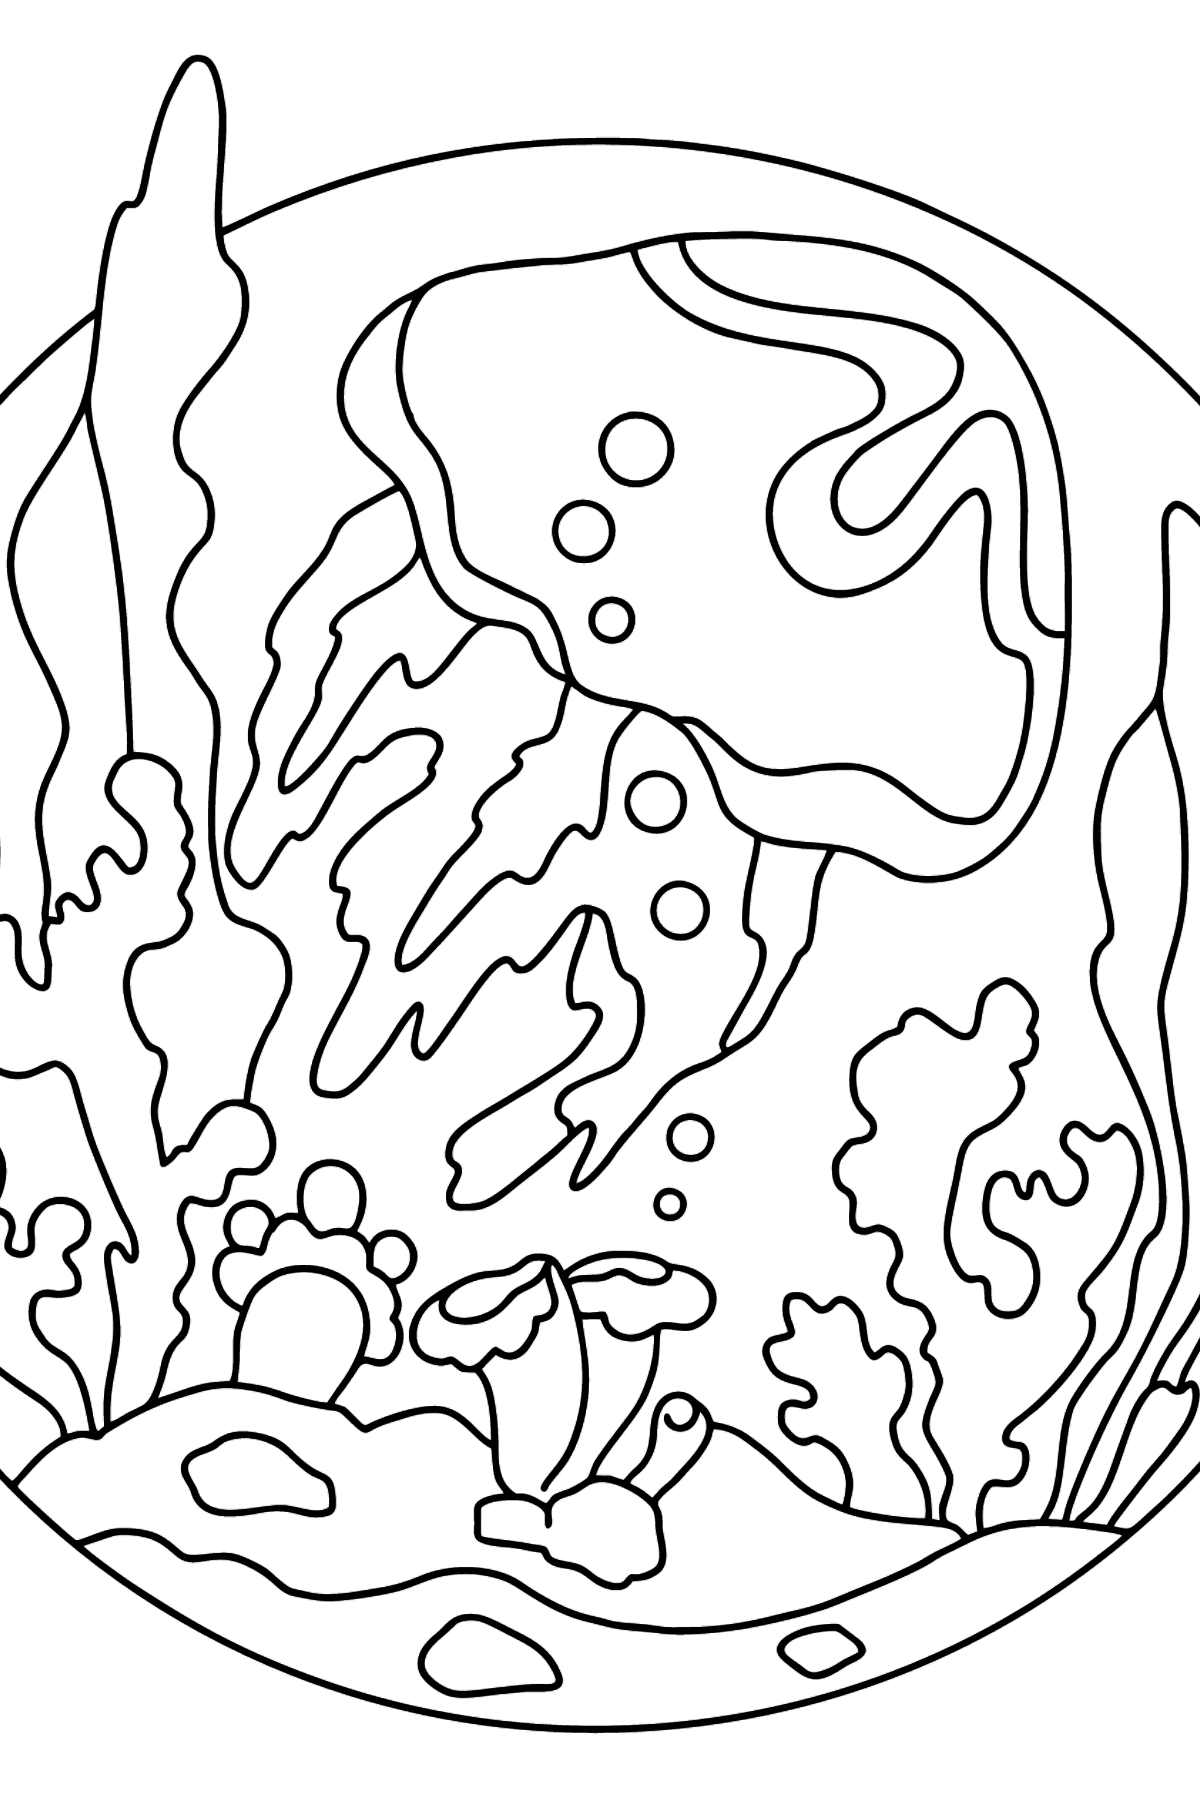 Boyama sayfası denizanası boyama sayfaları (kolay) - Boyamalar çocuklar için